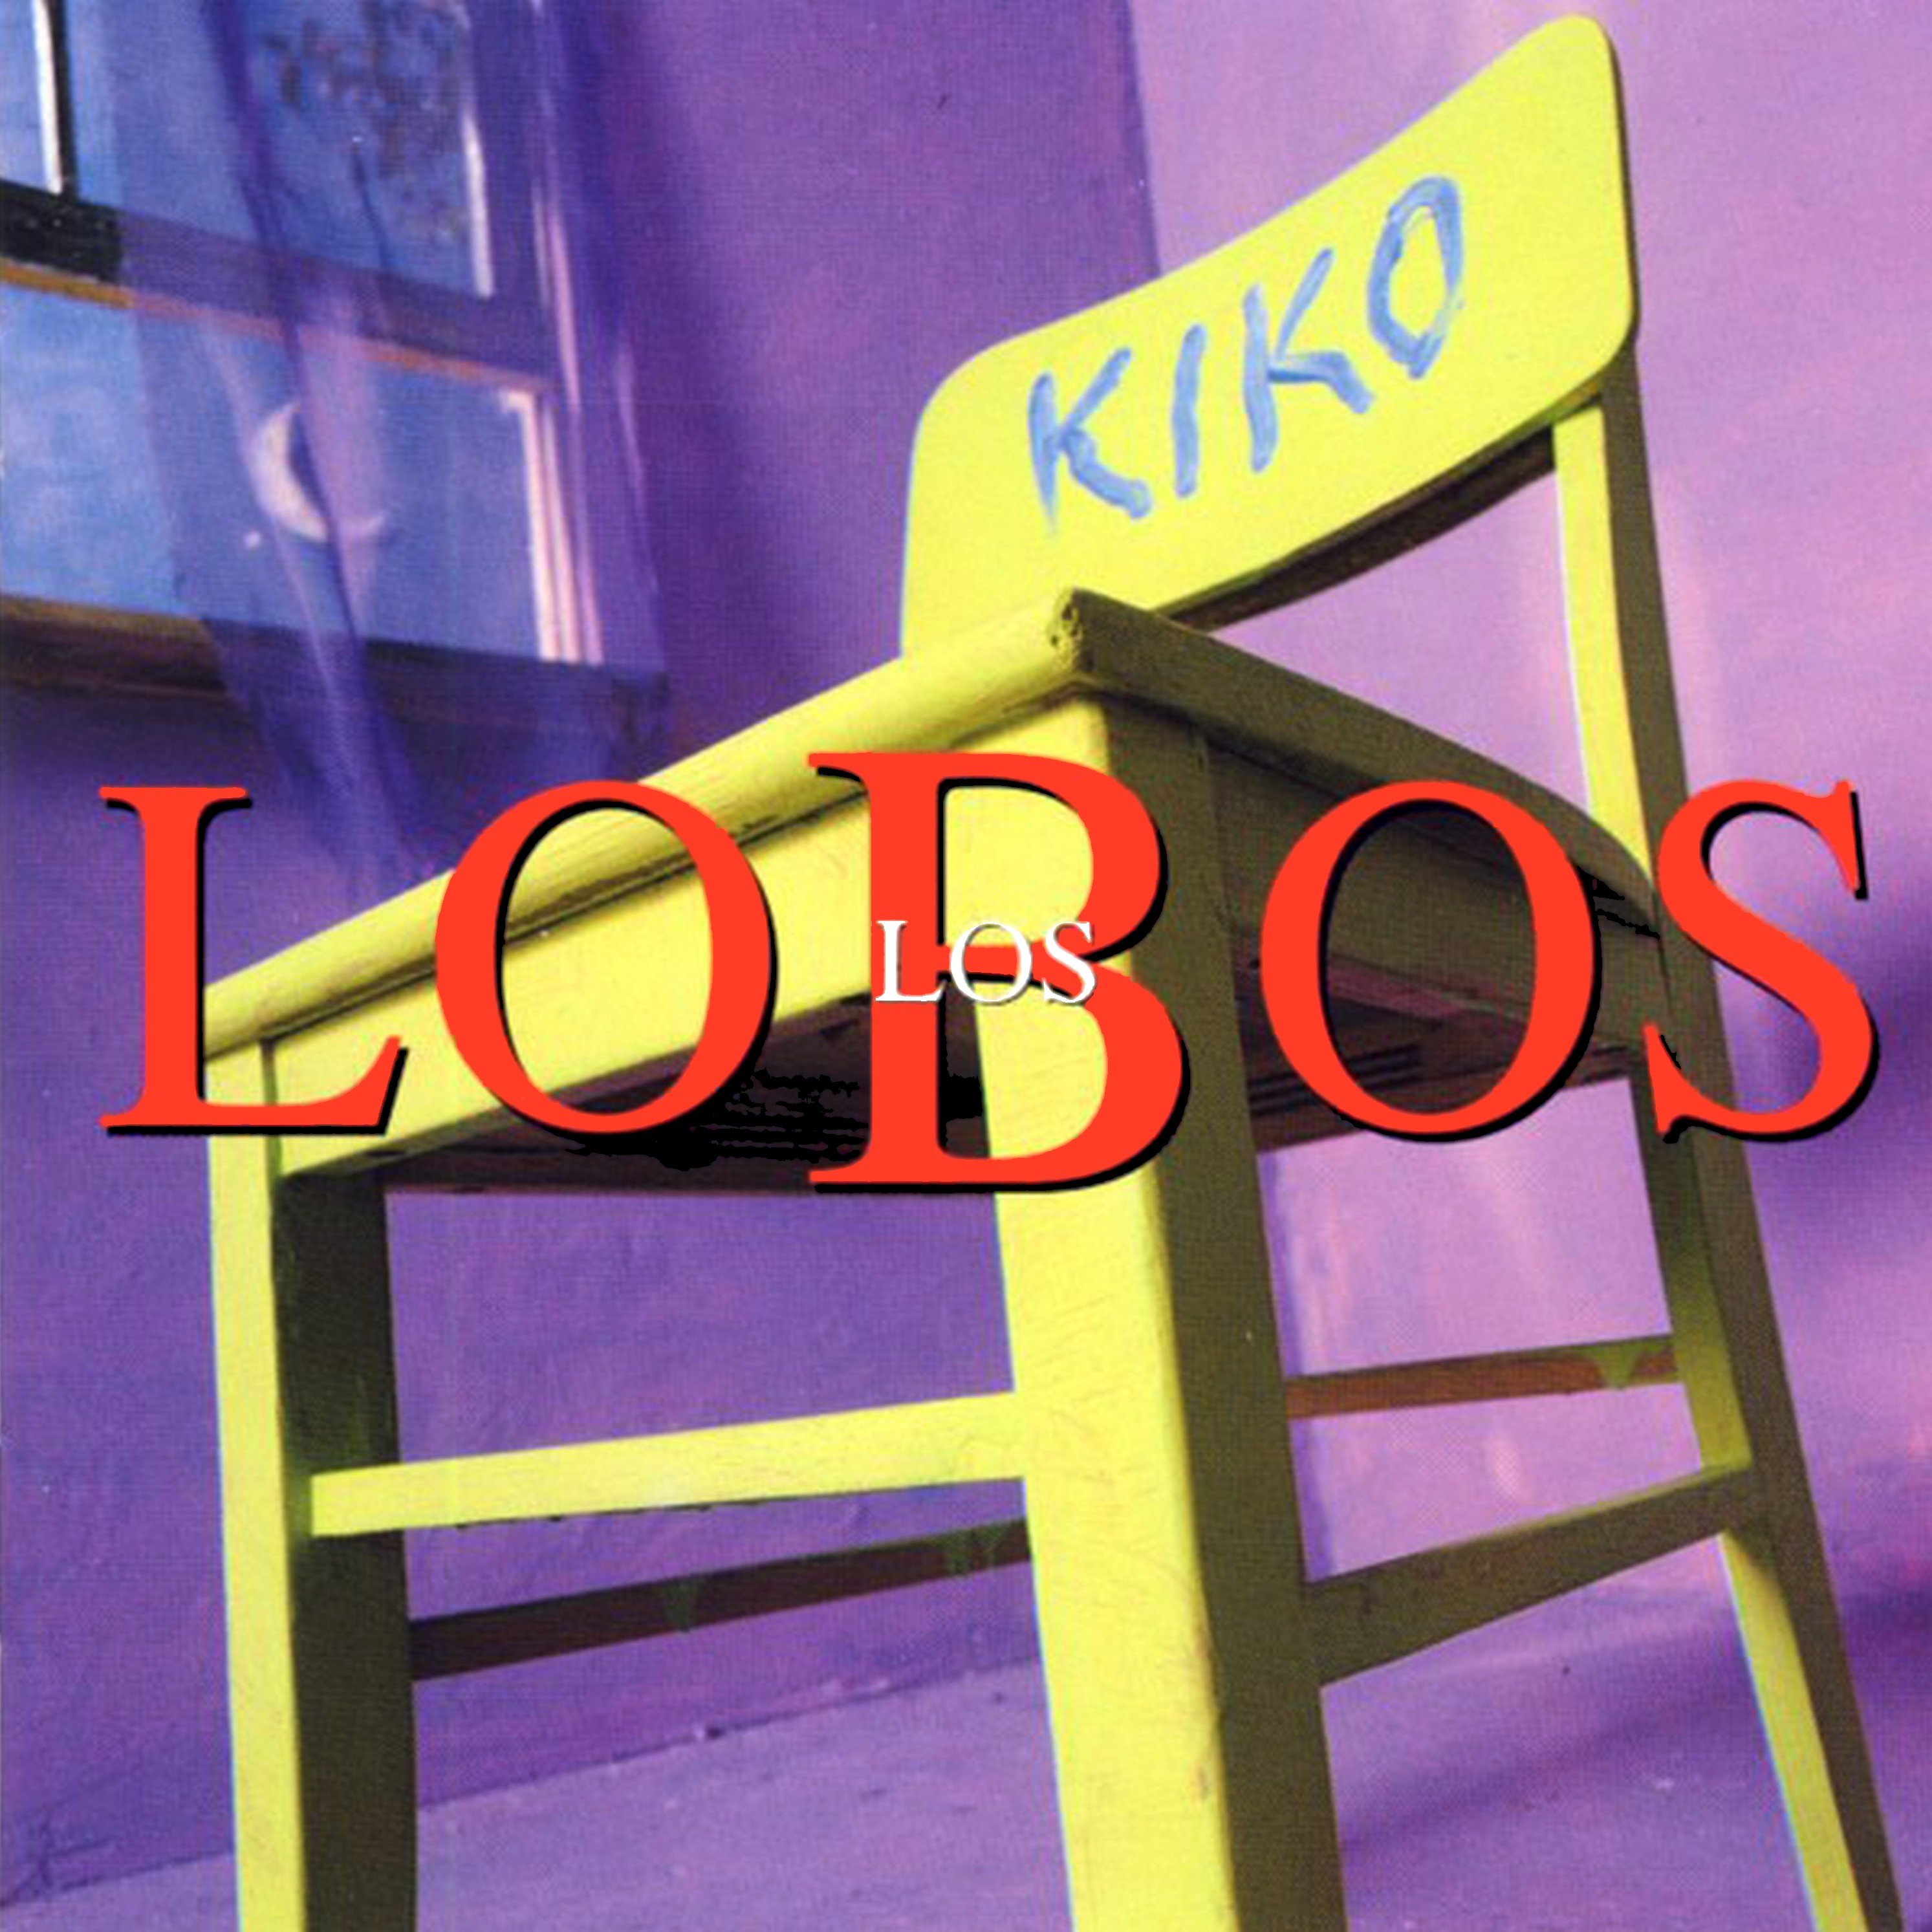 Los Lobos-Kiko-(828 298-2)-CD-FLAC-1992-6DM